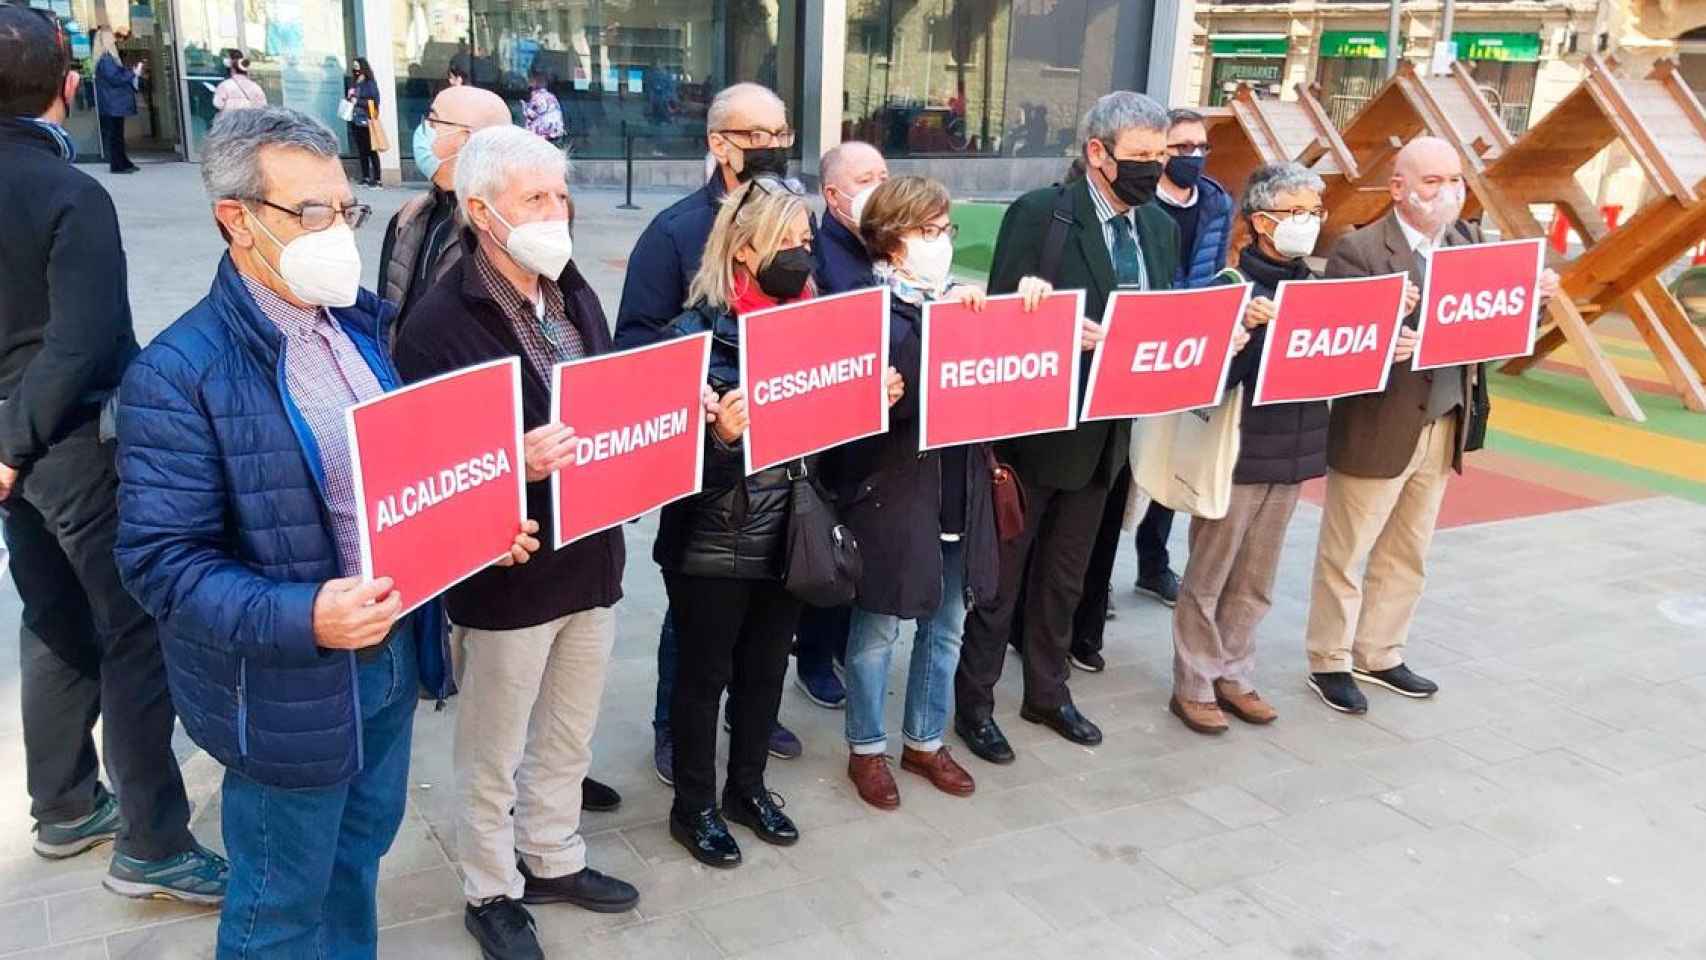 Los vecinos de Barcelona, con carteles que piden la destitución del concejal Eloi Badia / CG